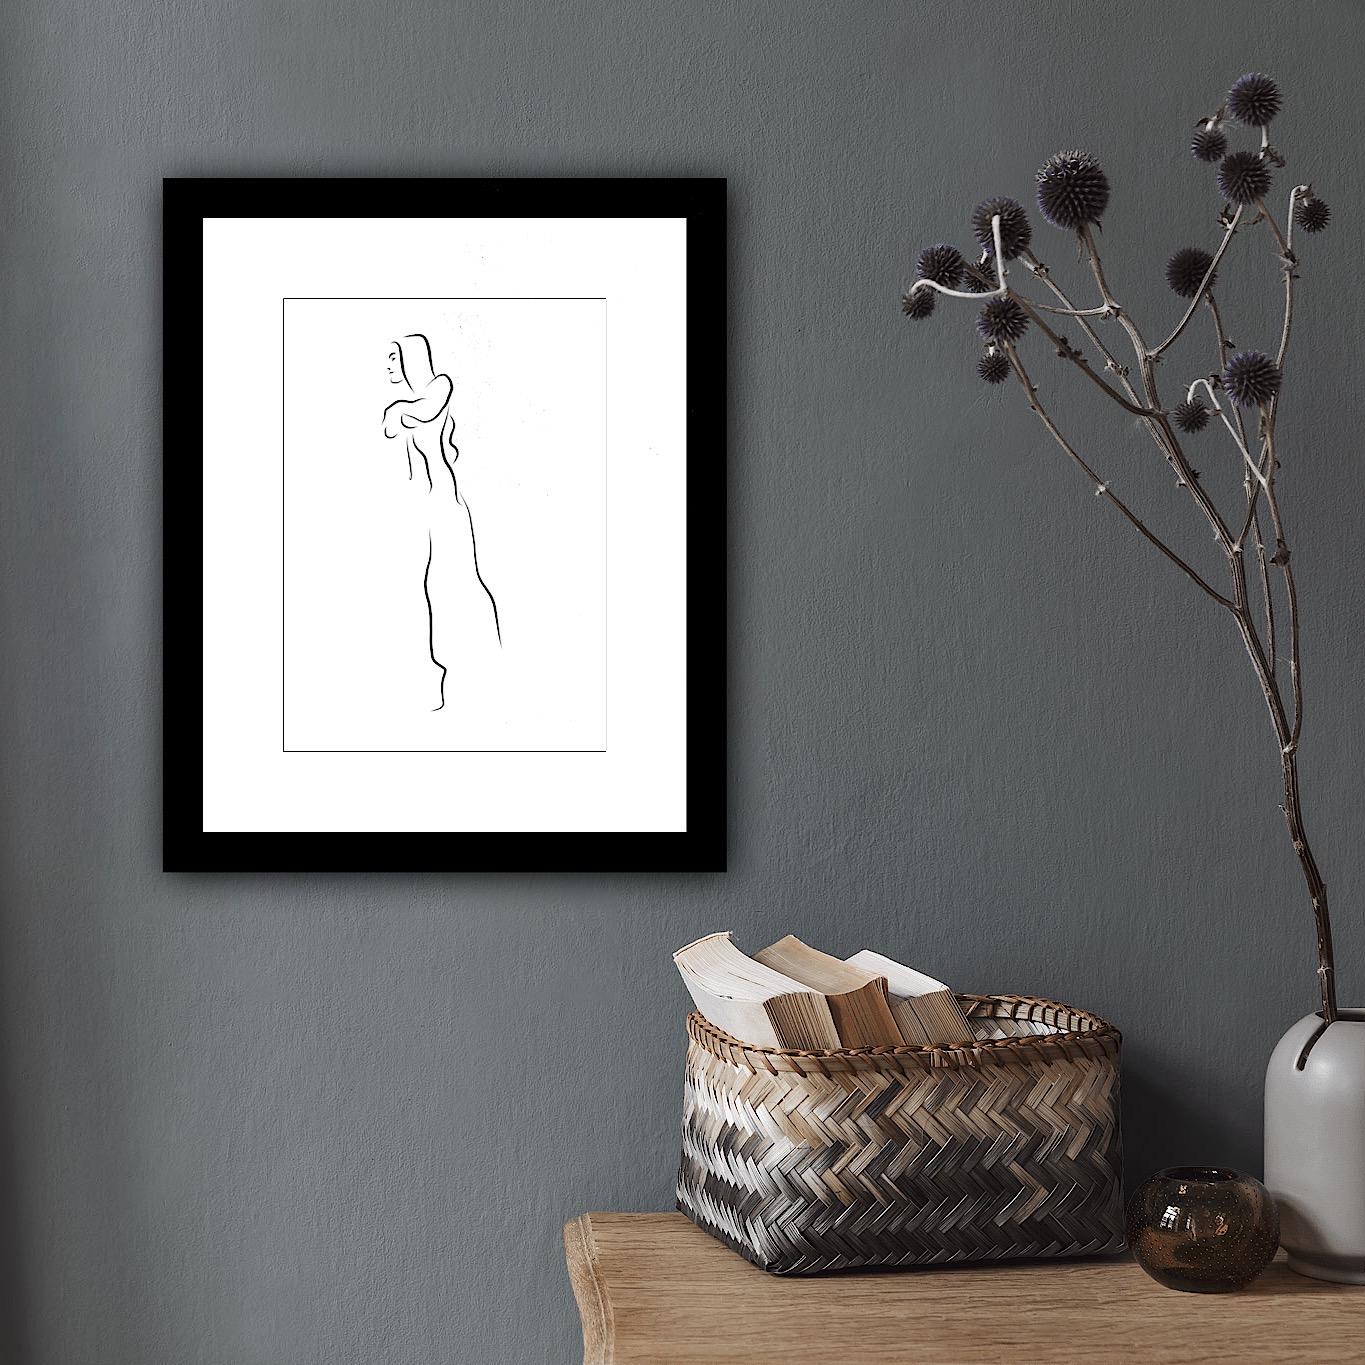 Haiku #12  - Digital Vector Drawing B&W Walking Female Nude Woman Figure - Black Nude Print by Michael Binkley